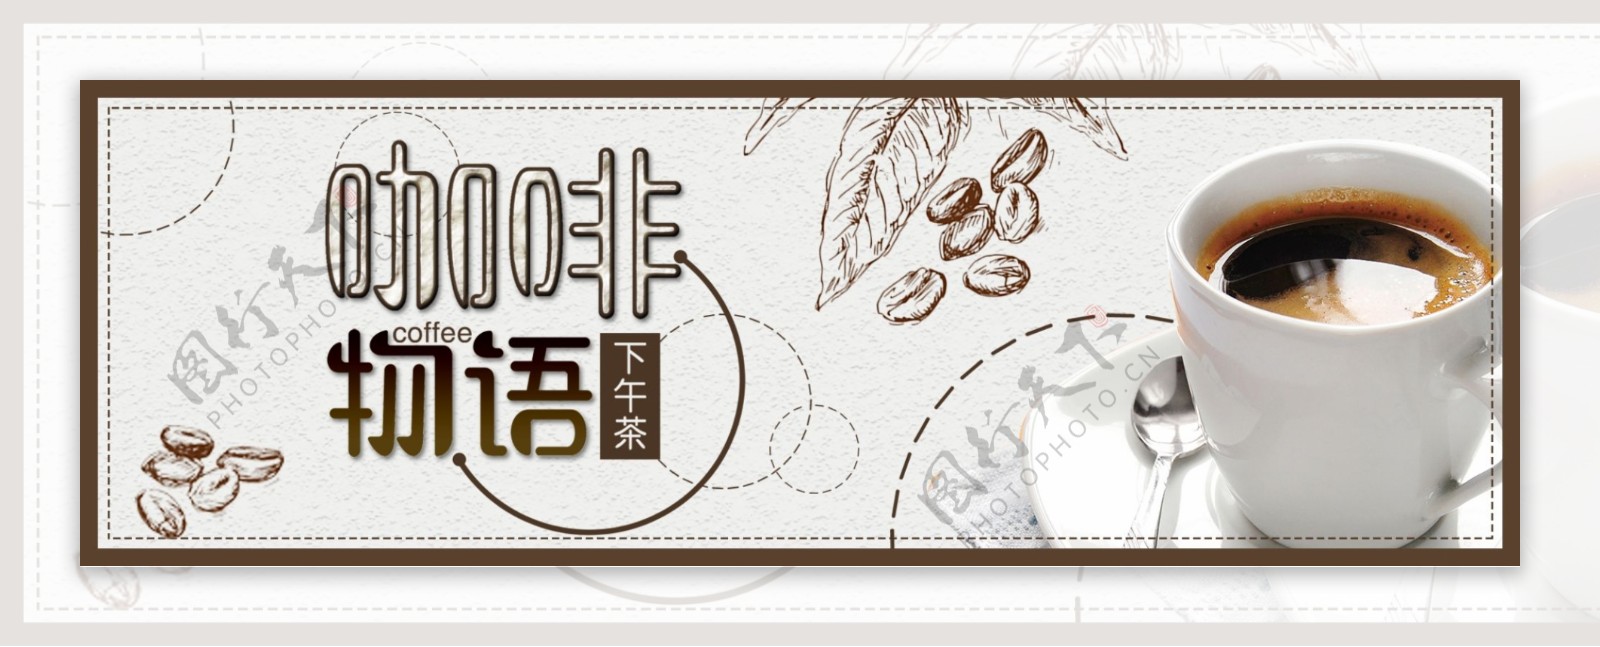 淘宝天猫电商咖啡奶茶下午茶饮料手绘海报banner